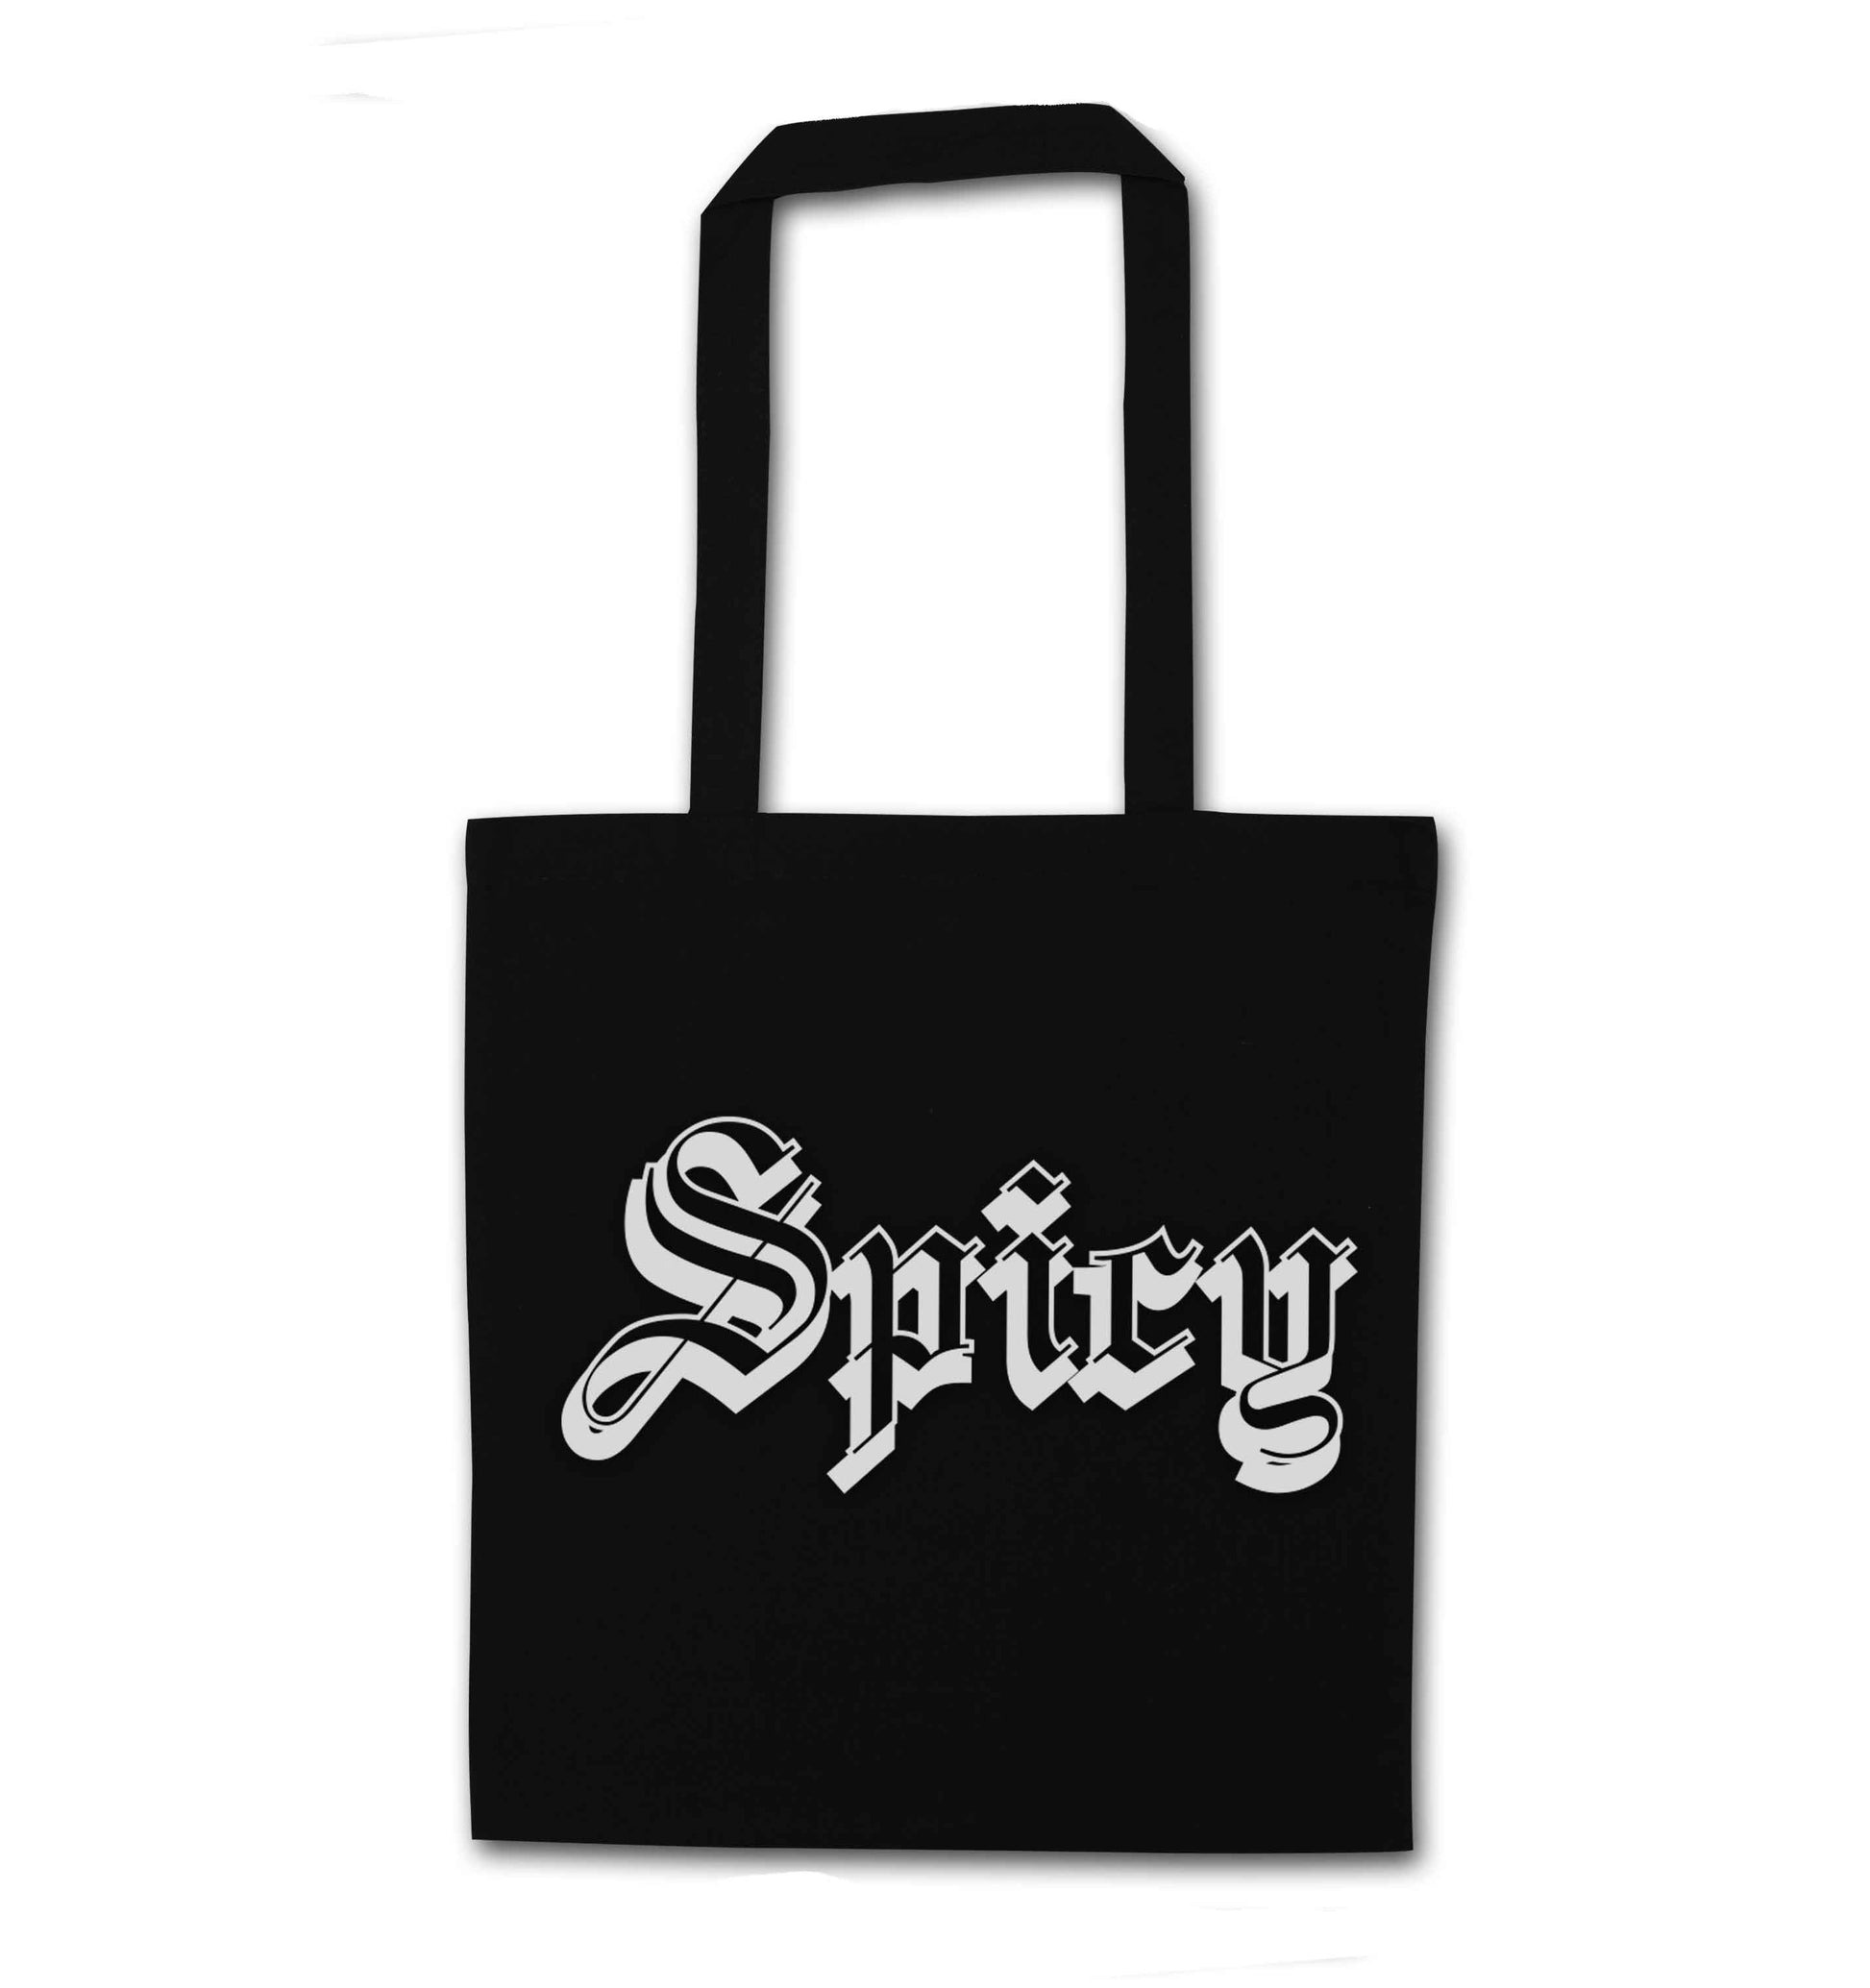 Spicy black tote bag